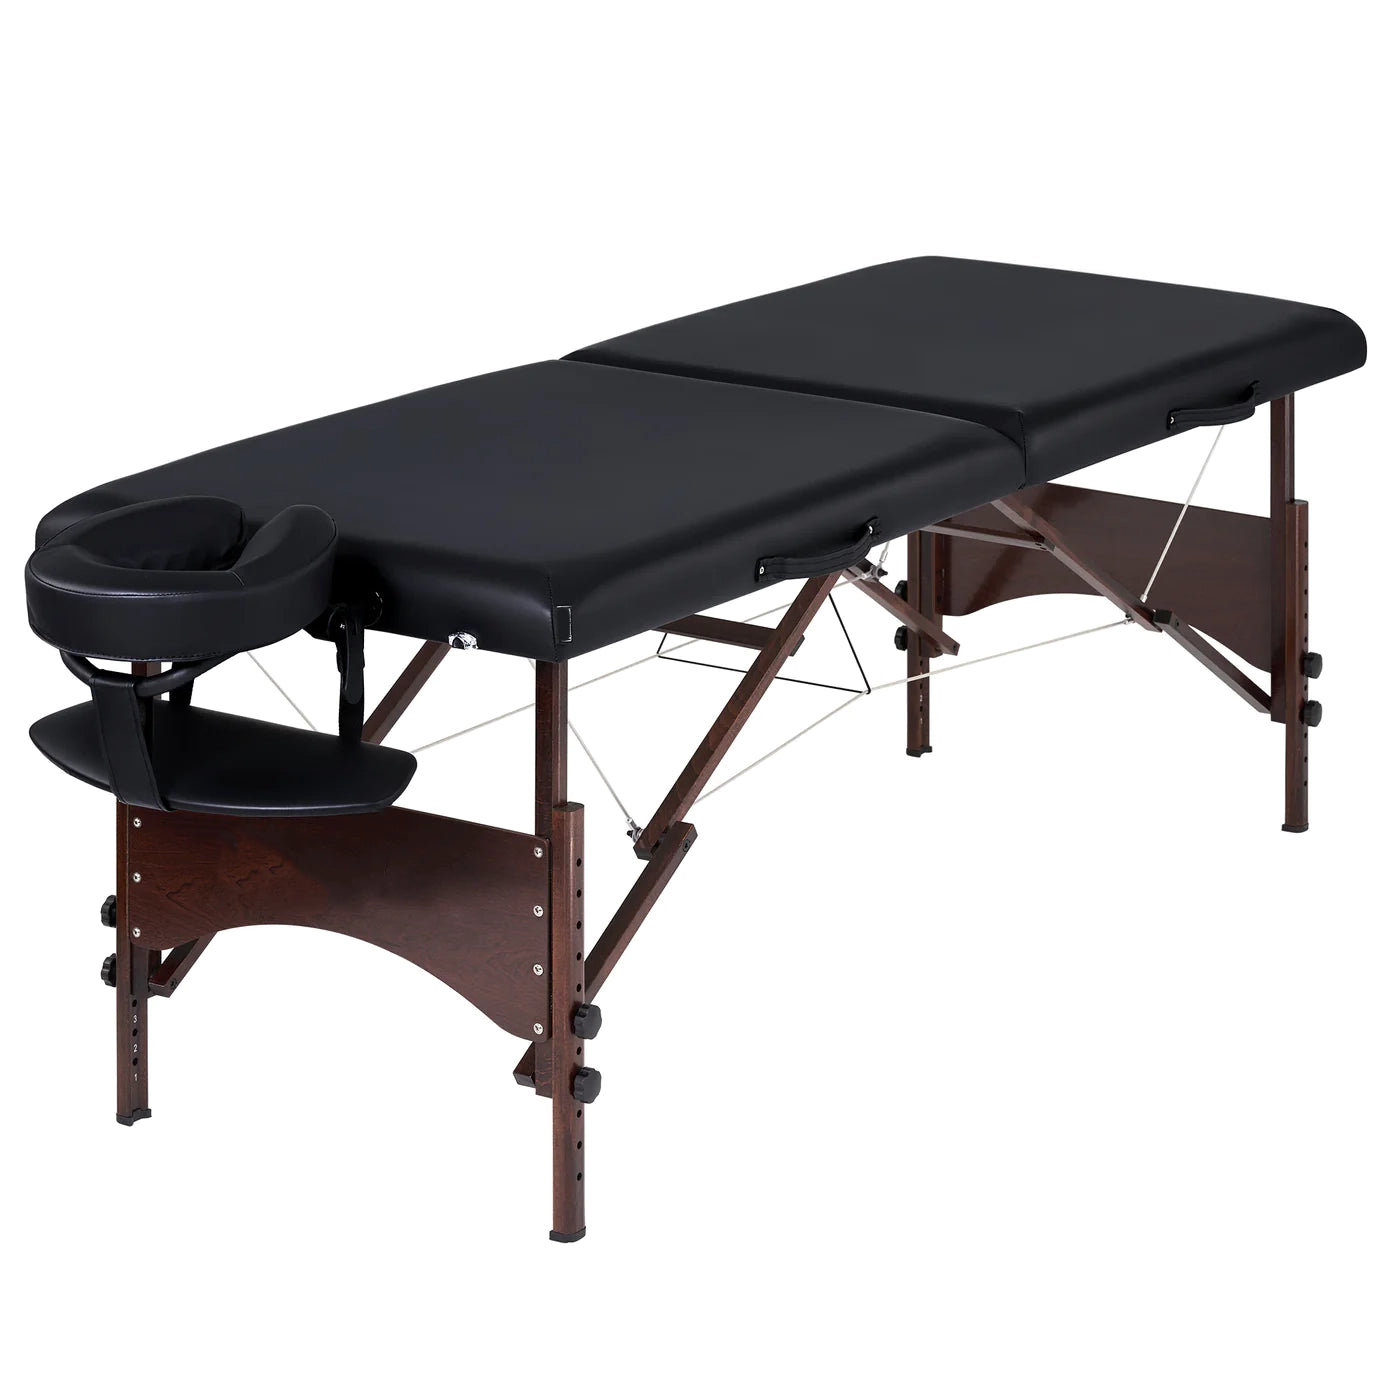 Spabodega 28" Argo Portable Massage Table Package in Black Upholstery, Walnut Legs